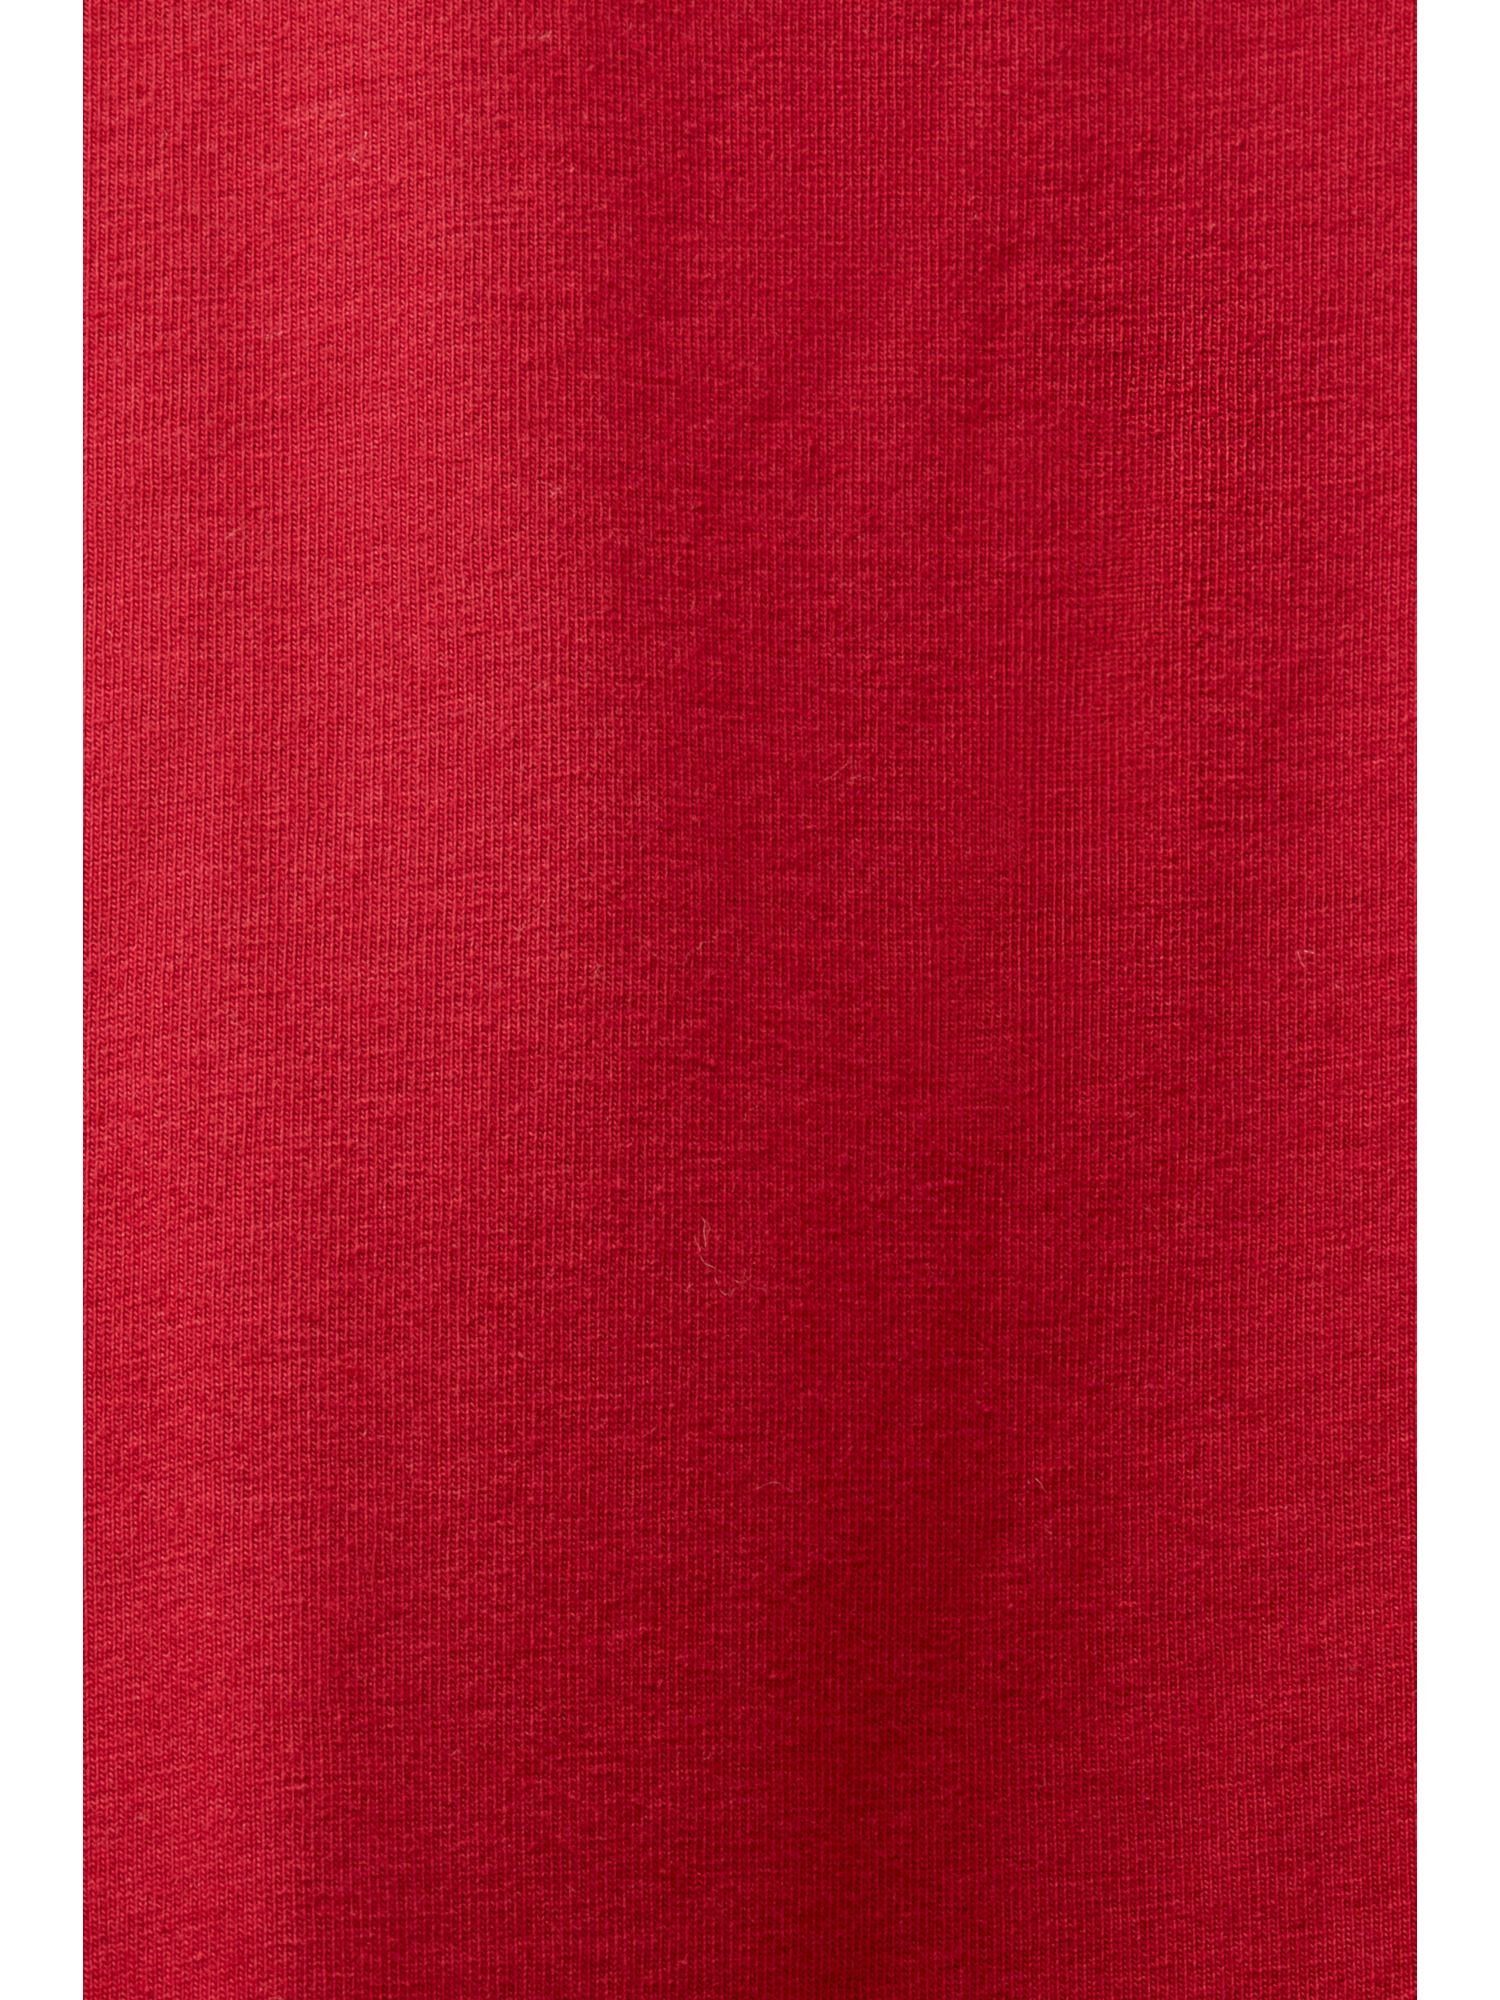 Pyjama-Set NEW aus Flanell RED Pyjama kariertem Esprit